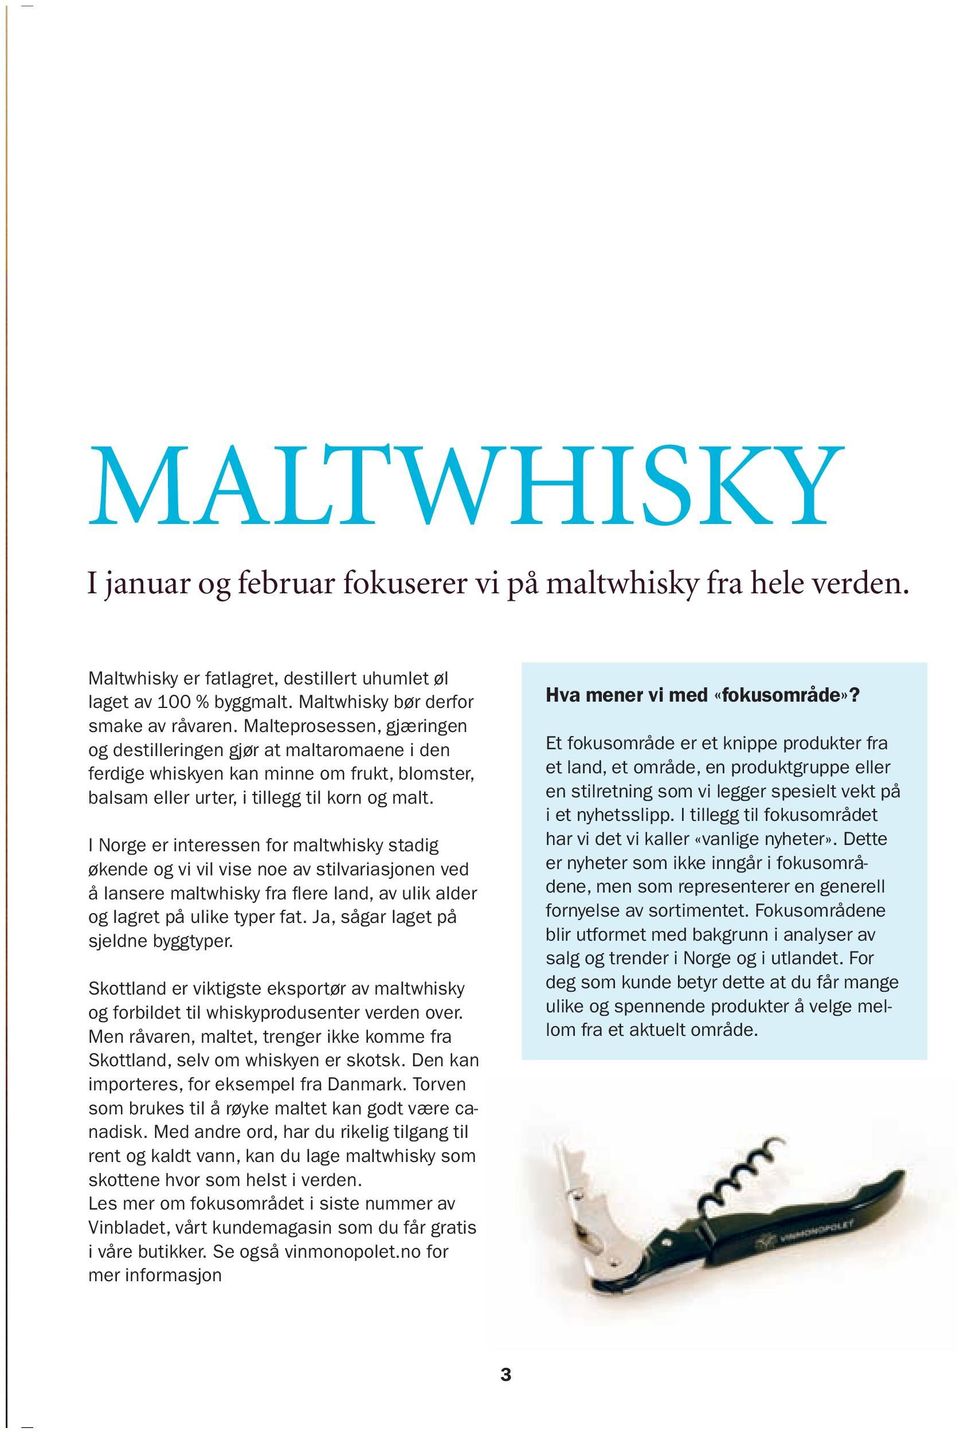 I Norge er interessen for maltwhisky stadig økende og vi vil vise noe av stilvariasjonen ved å lansere maltwhisky fra flere land, av ulik alder og lagret på ulike typer fat.